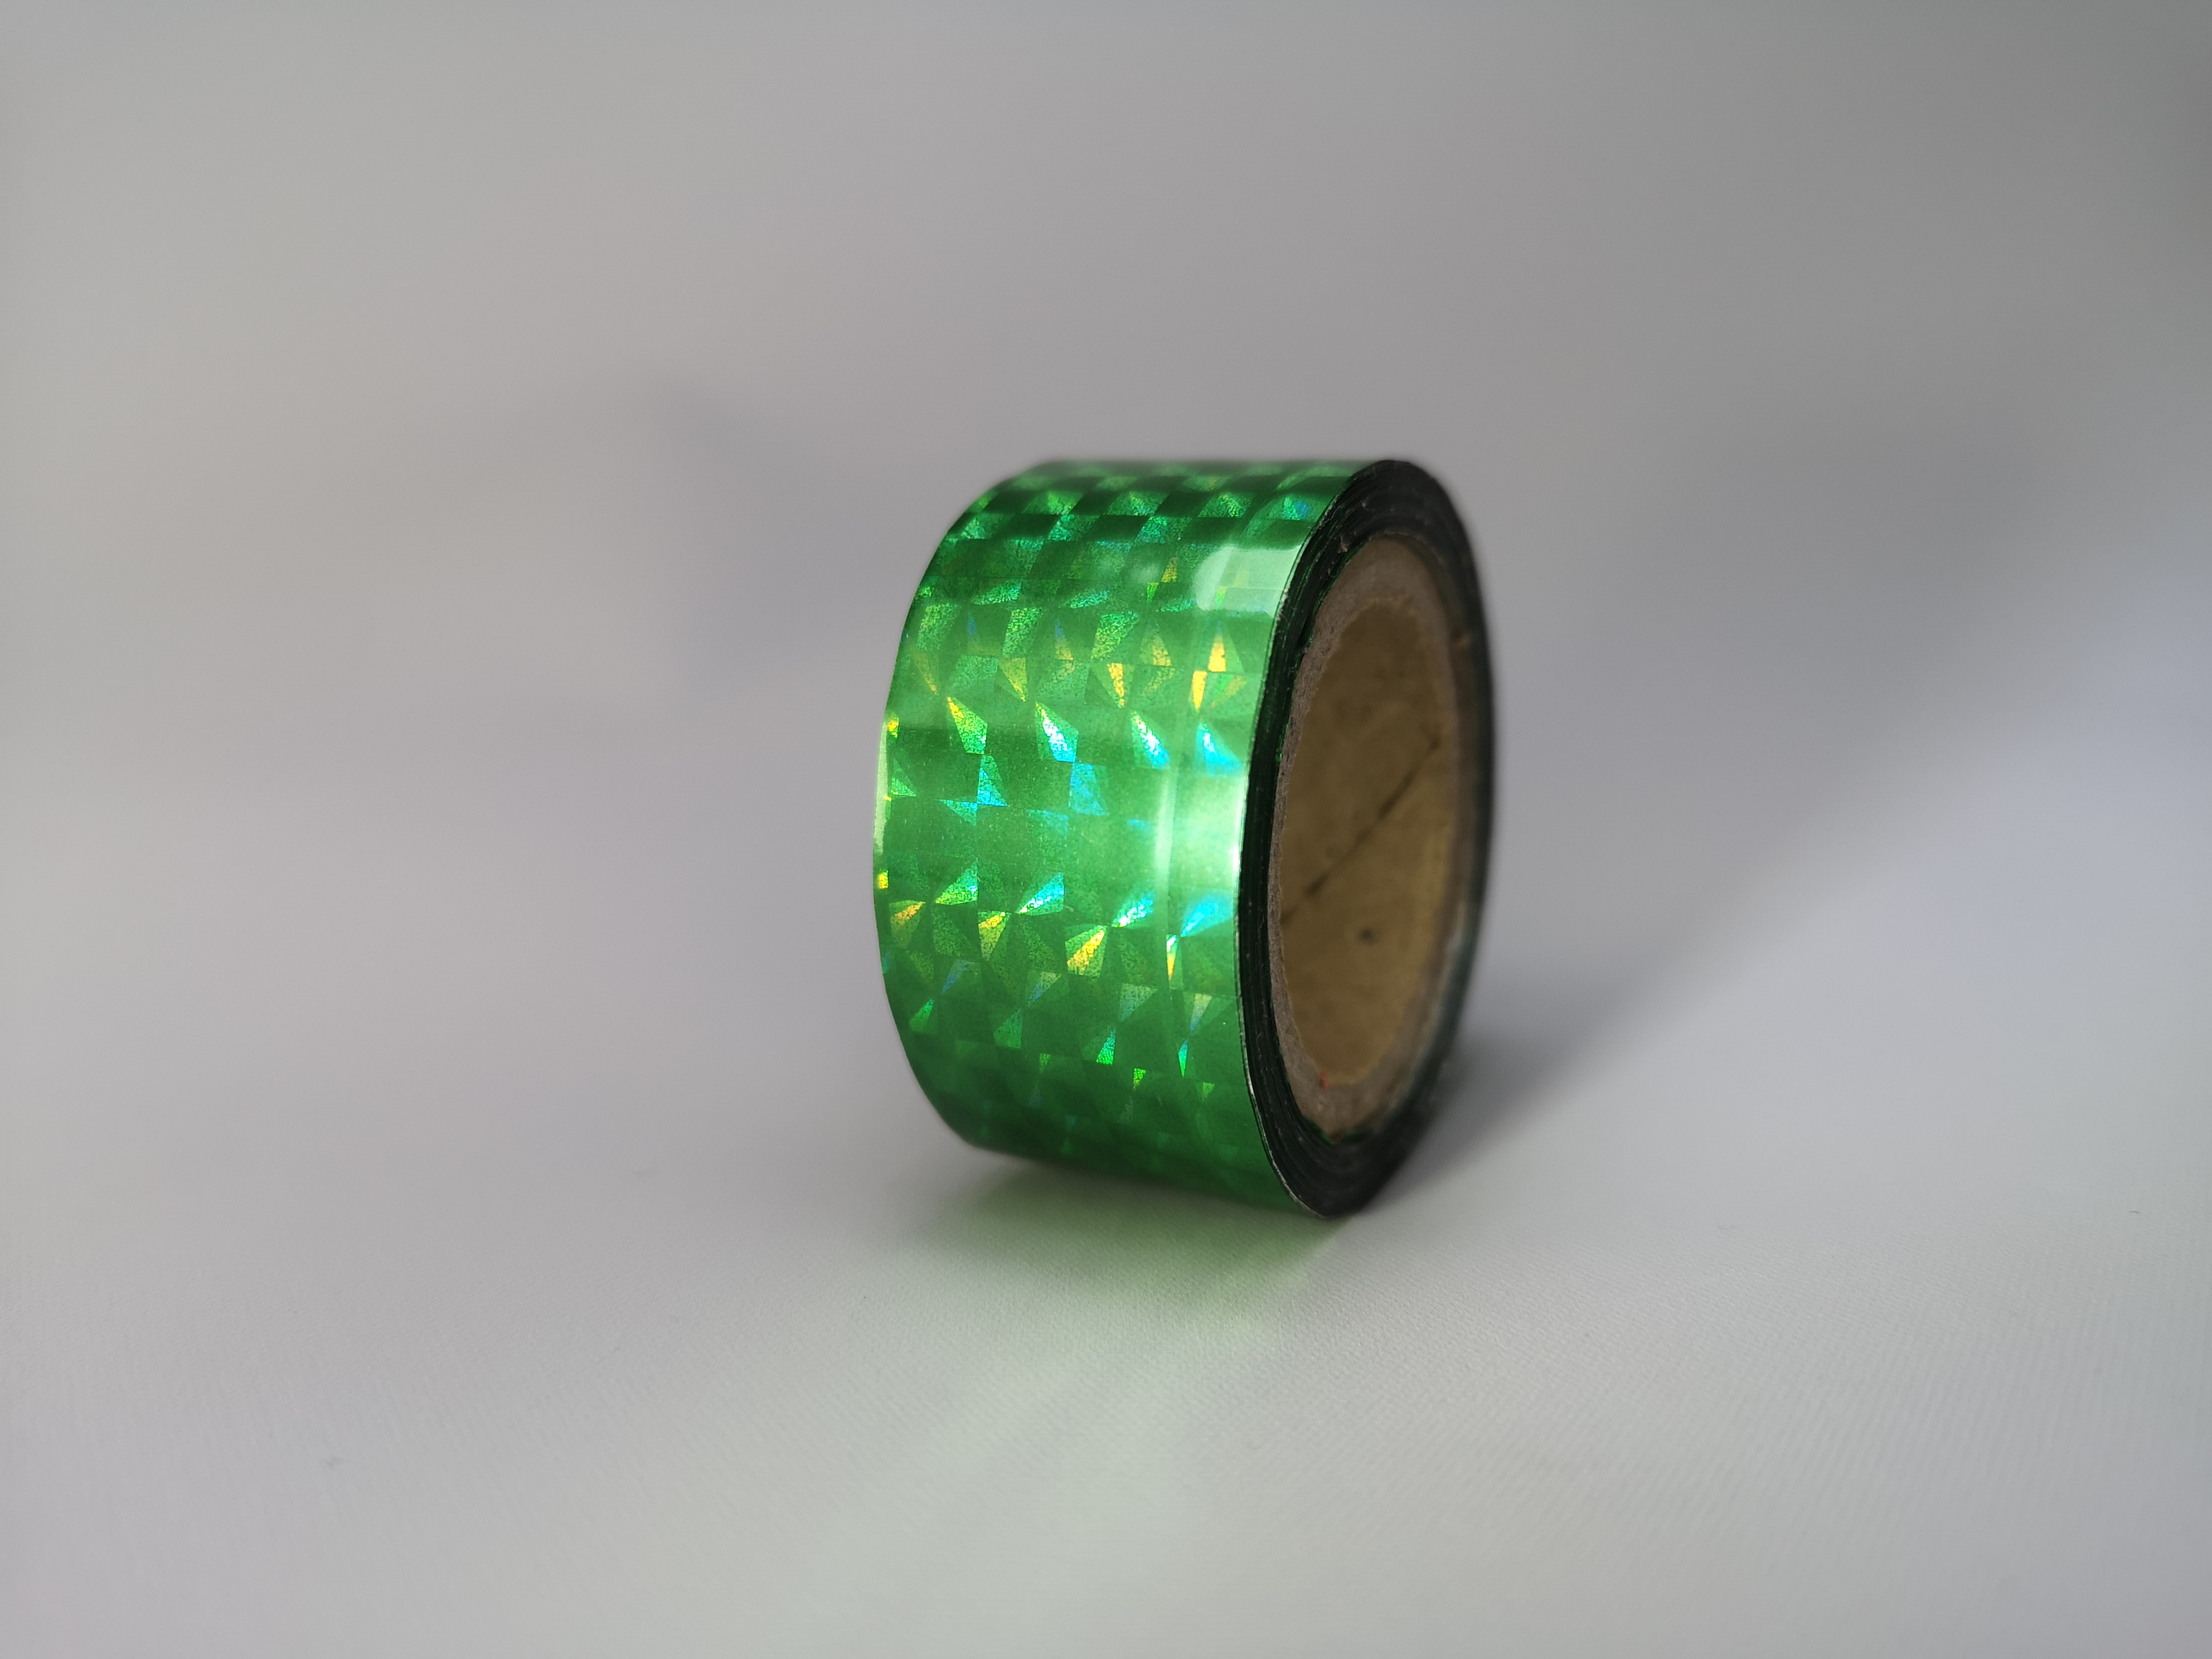 Holografic Prisma Green 11m Deco-Tape